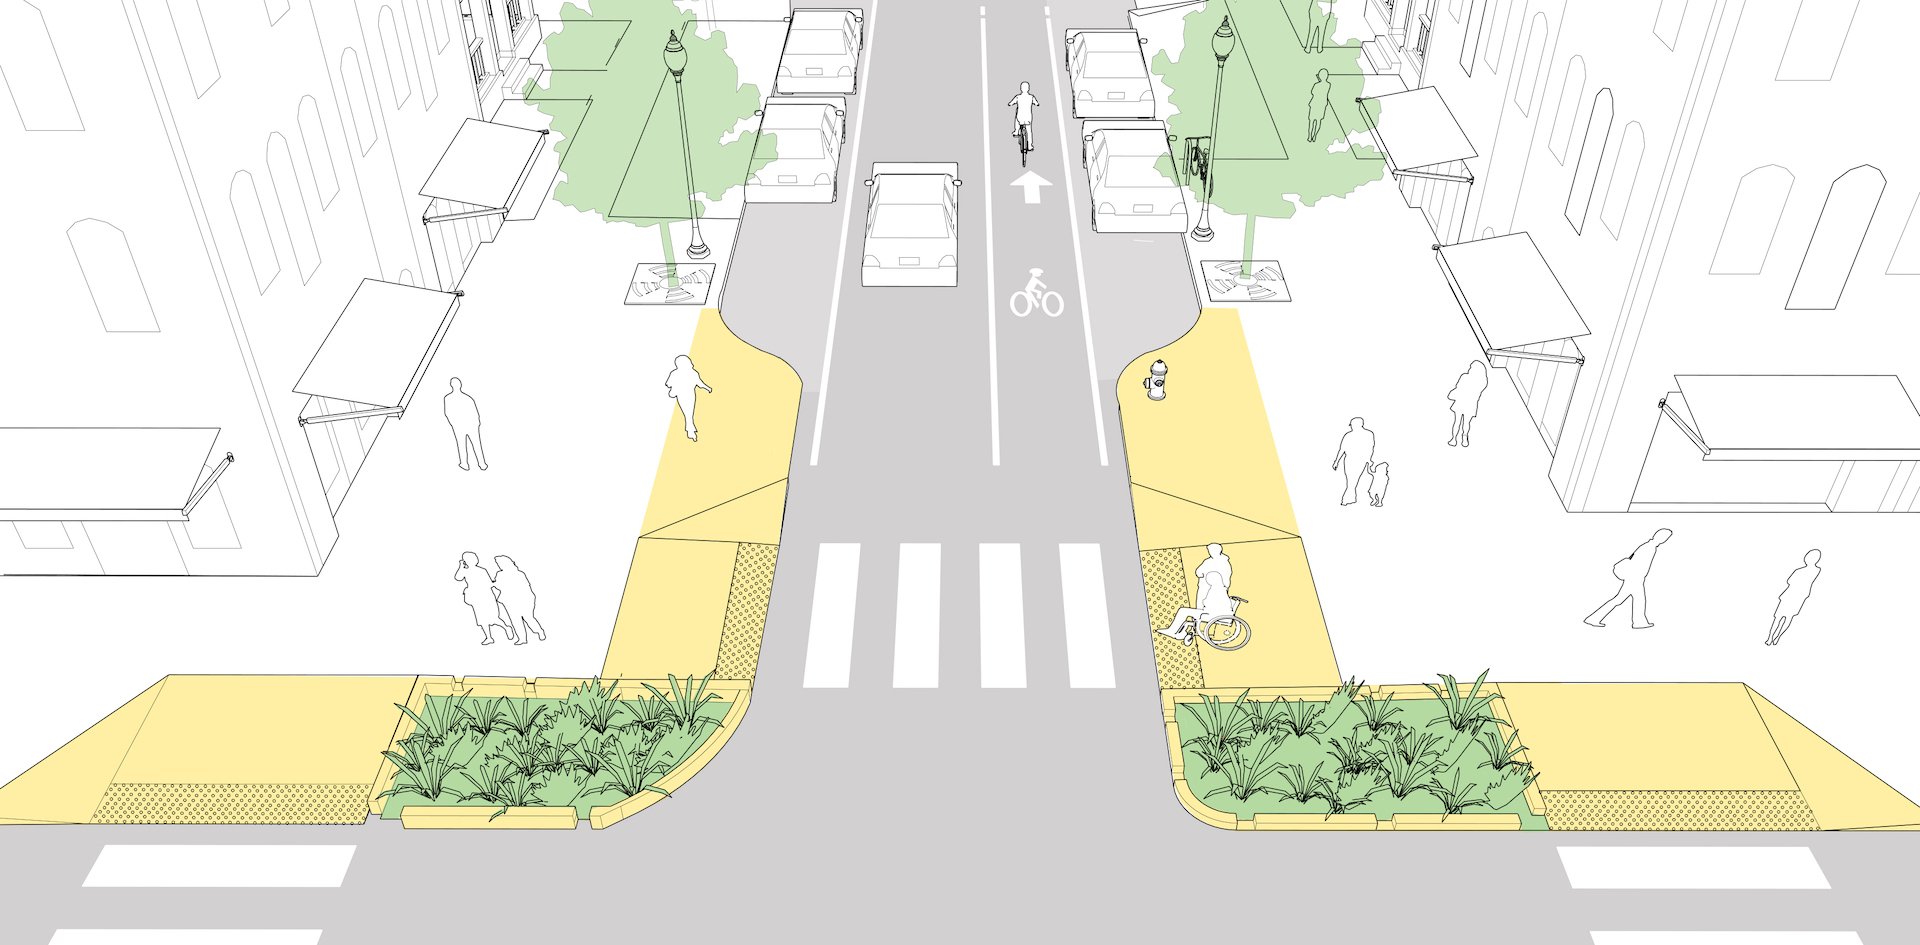 Элементы дороги для движения пешеходов. Проектирование велосипедных дорожек. Проектирование пешеходных и велосипедных дорожек. Проектирование велодорожек. Озеленение улиц и дорог.